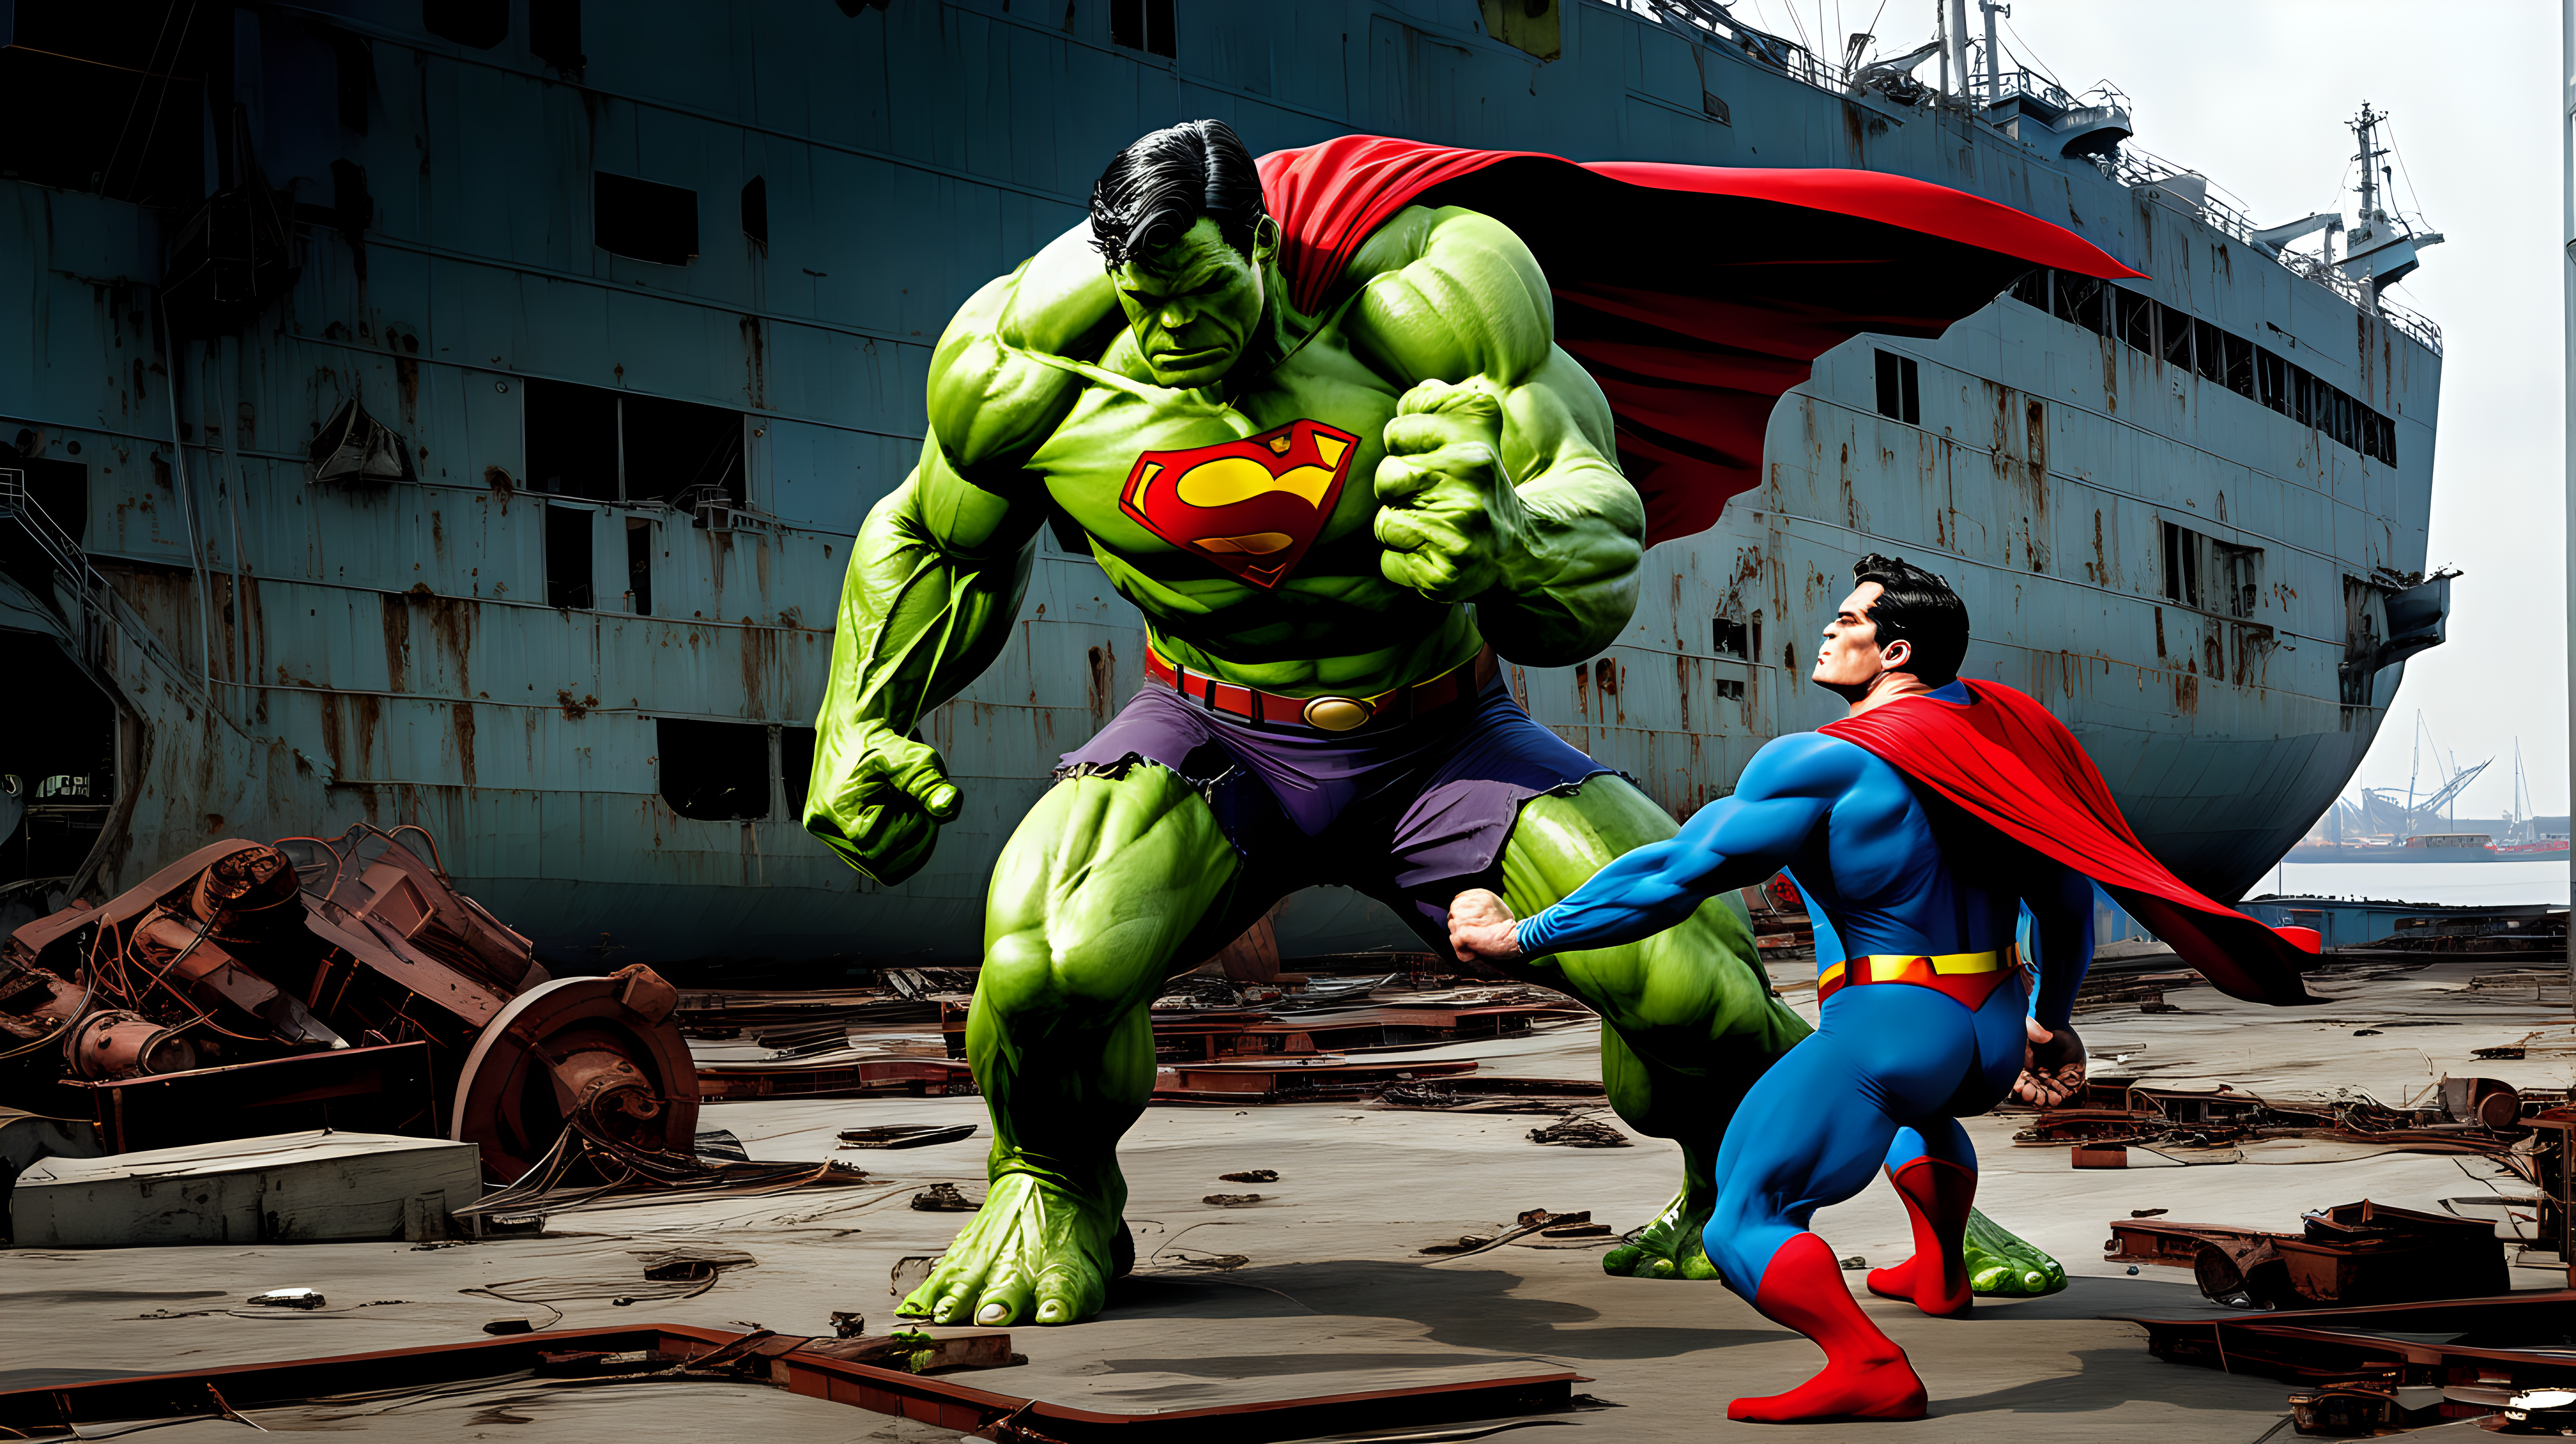 Superman fights the hulk in an abandon shipyard